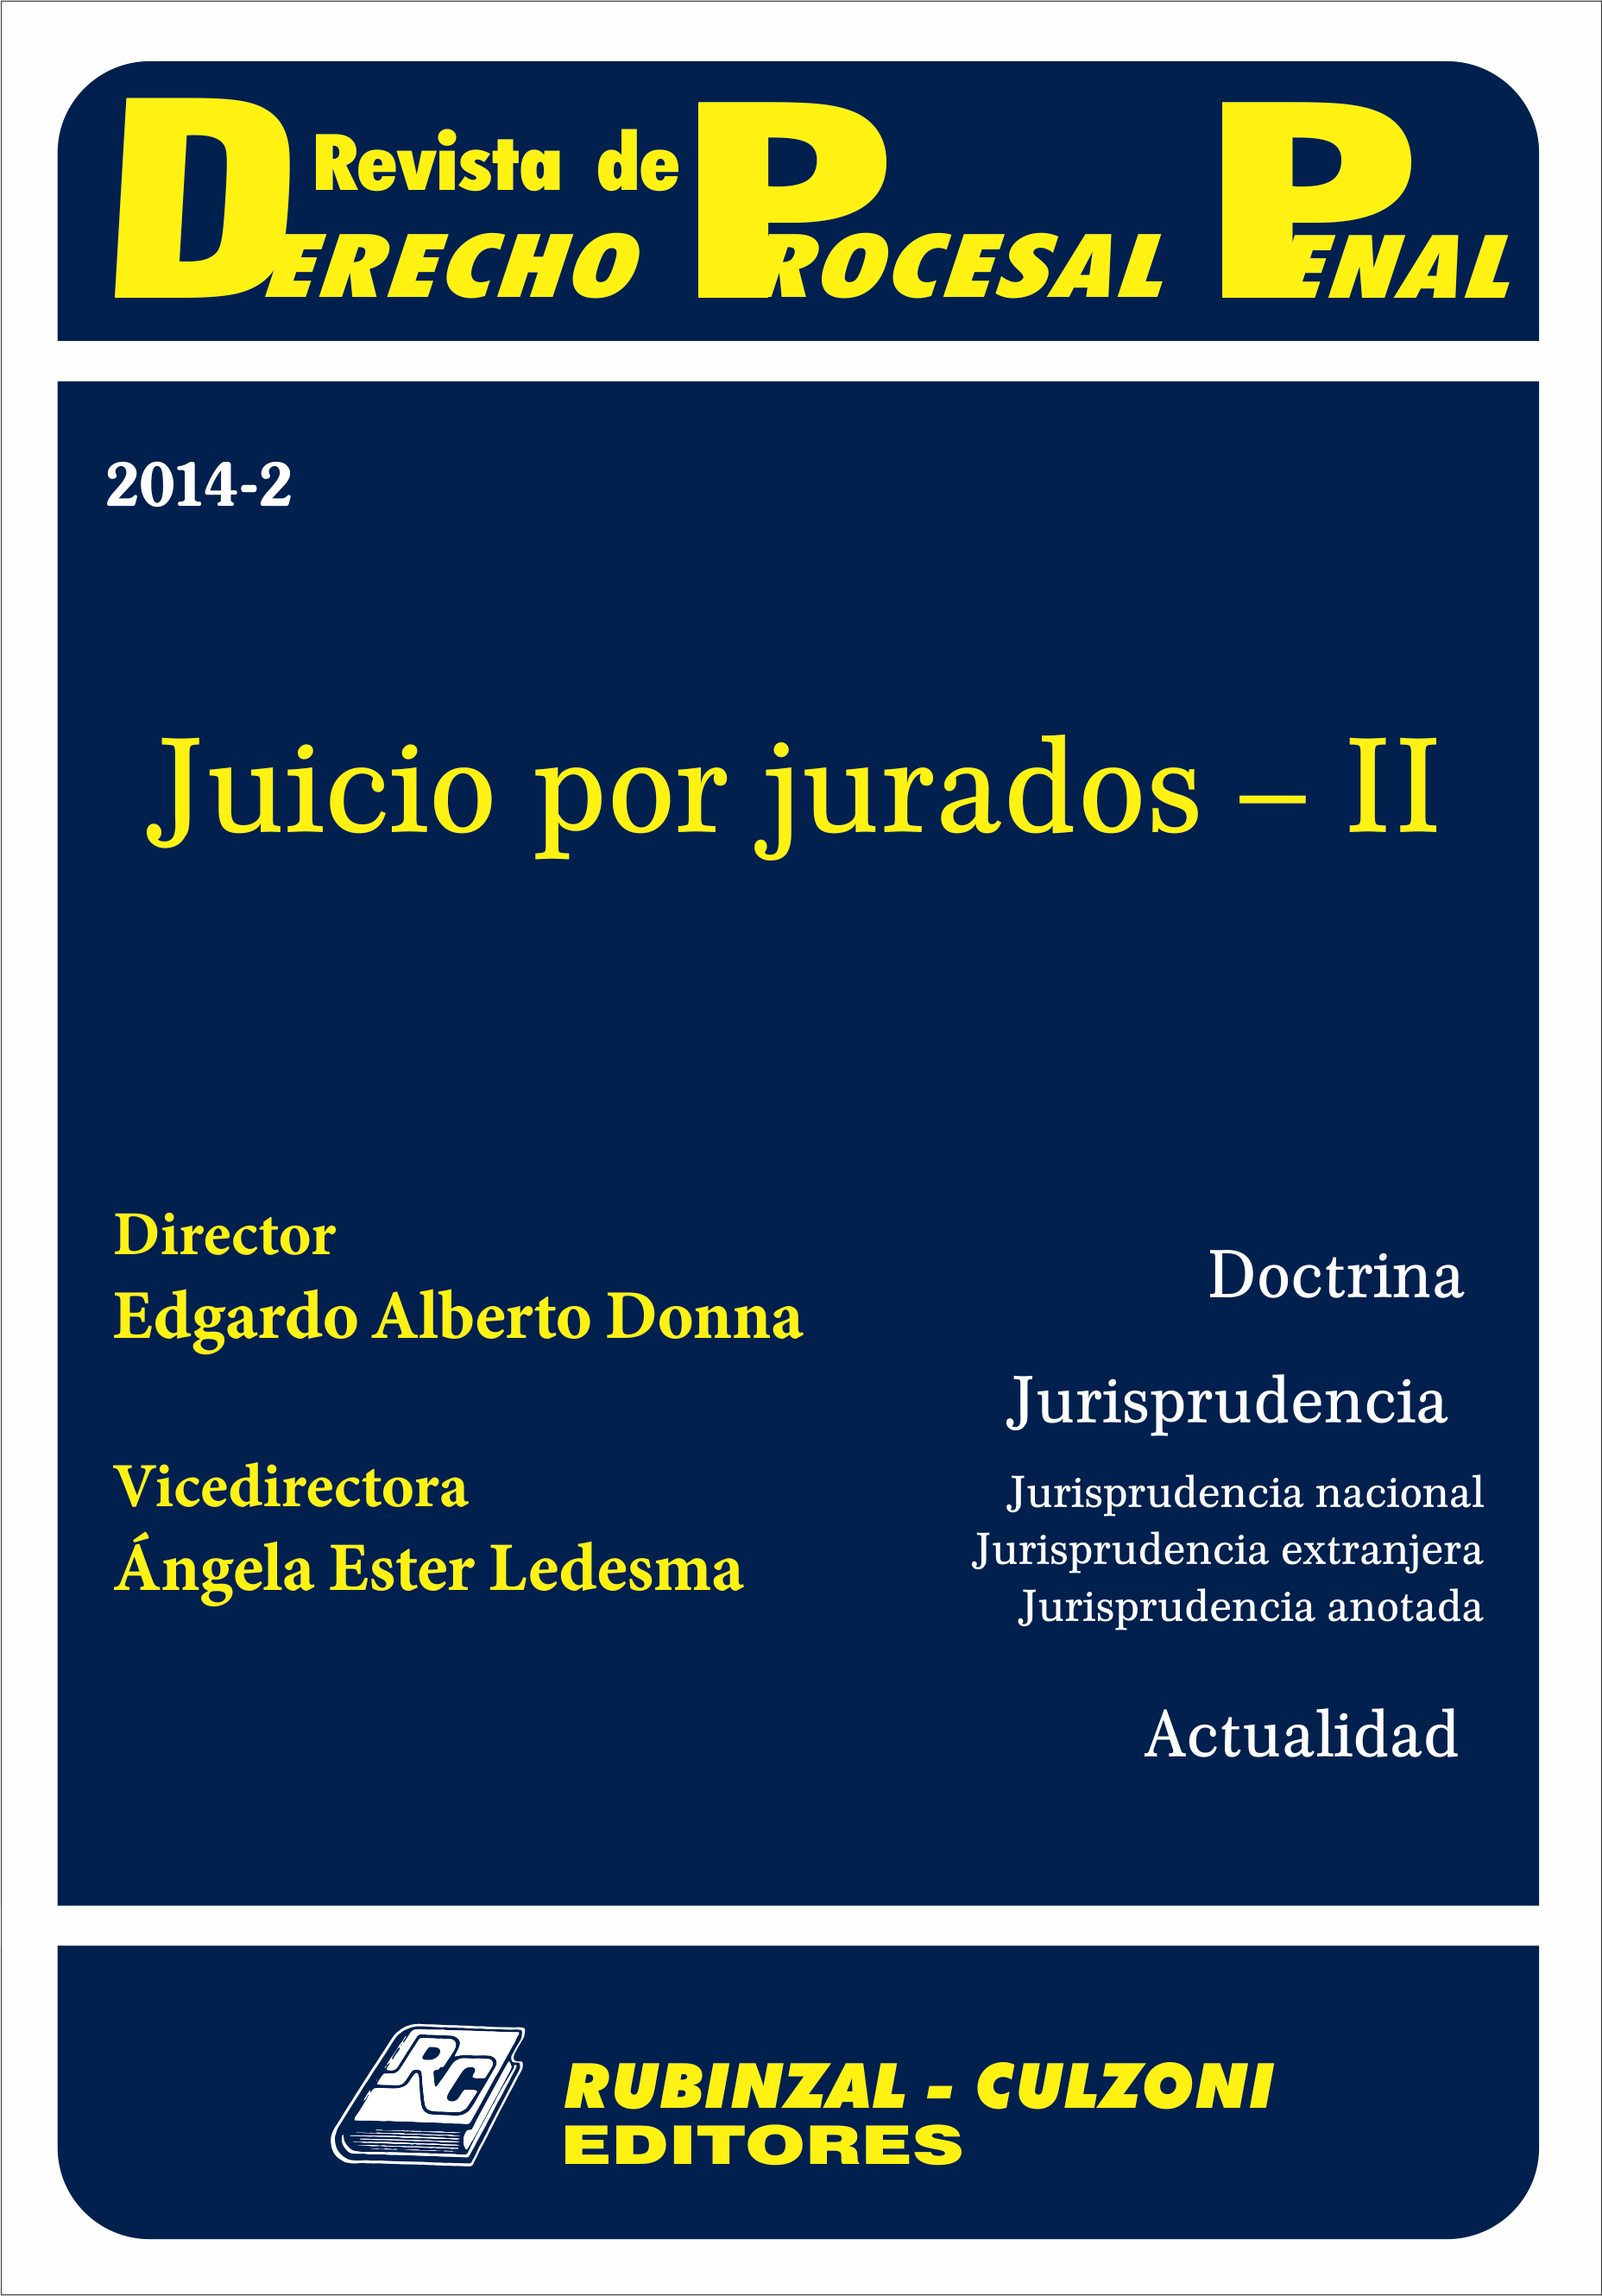 Revista de Derecho Procesal Penal - Juicio por Jurados - II